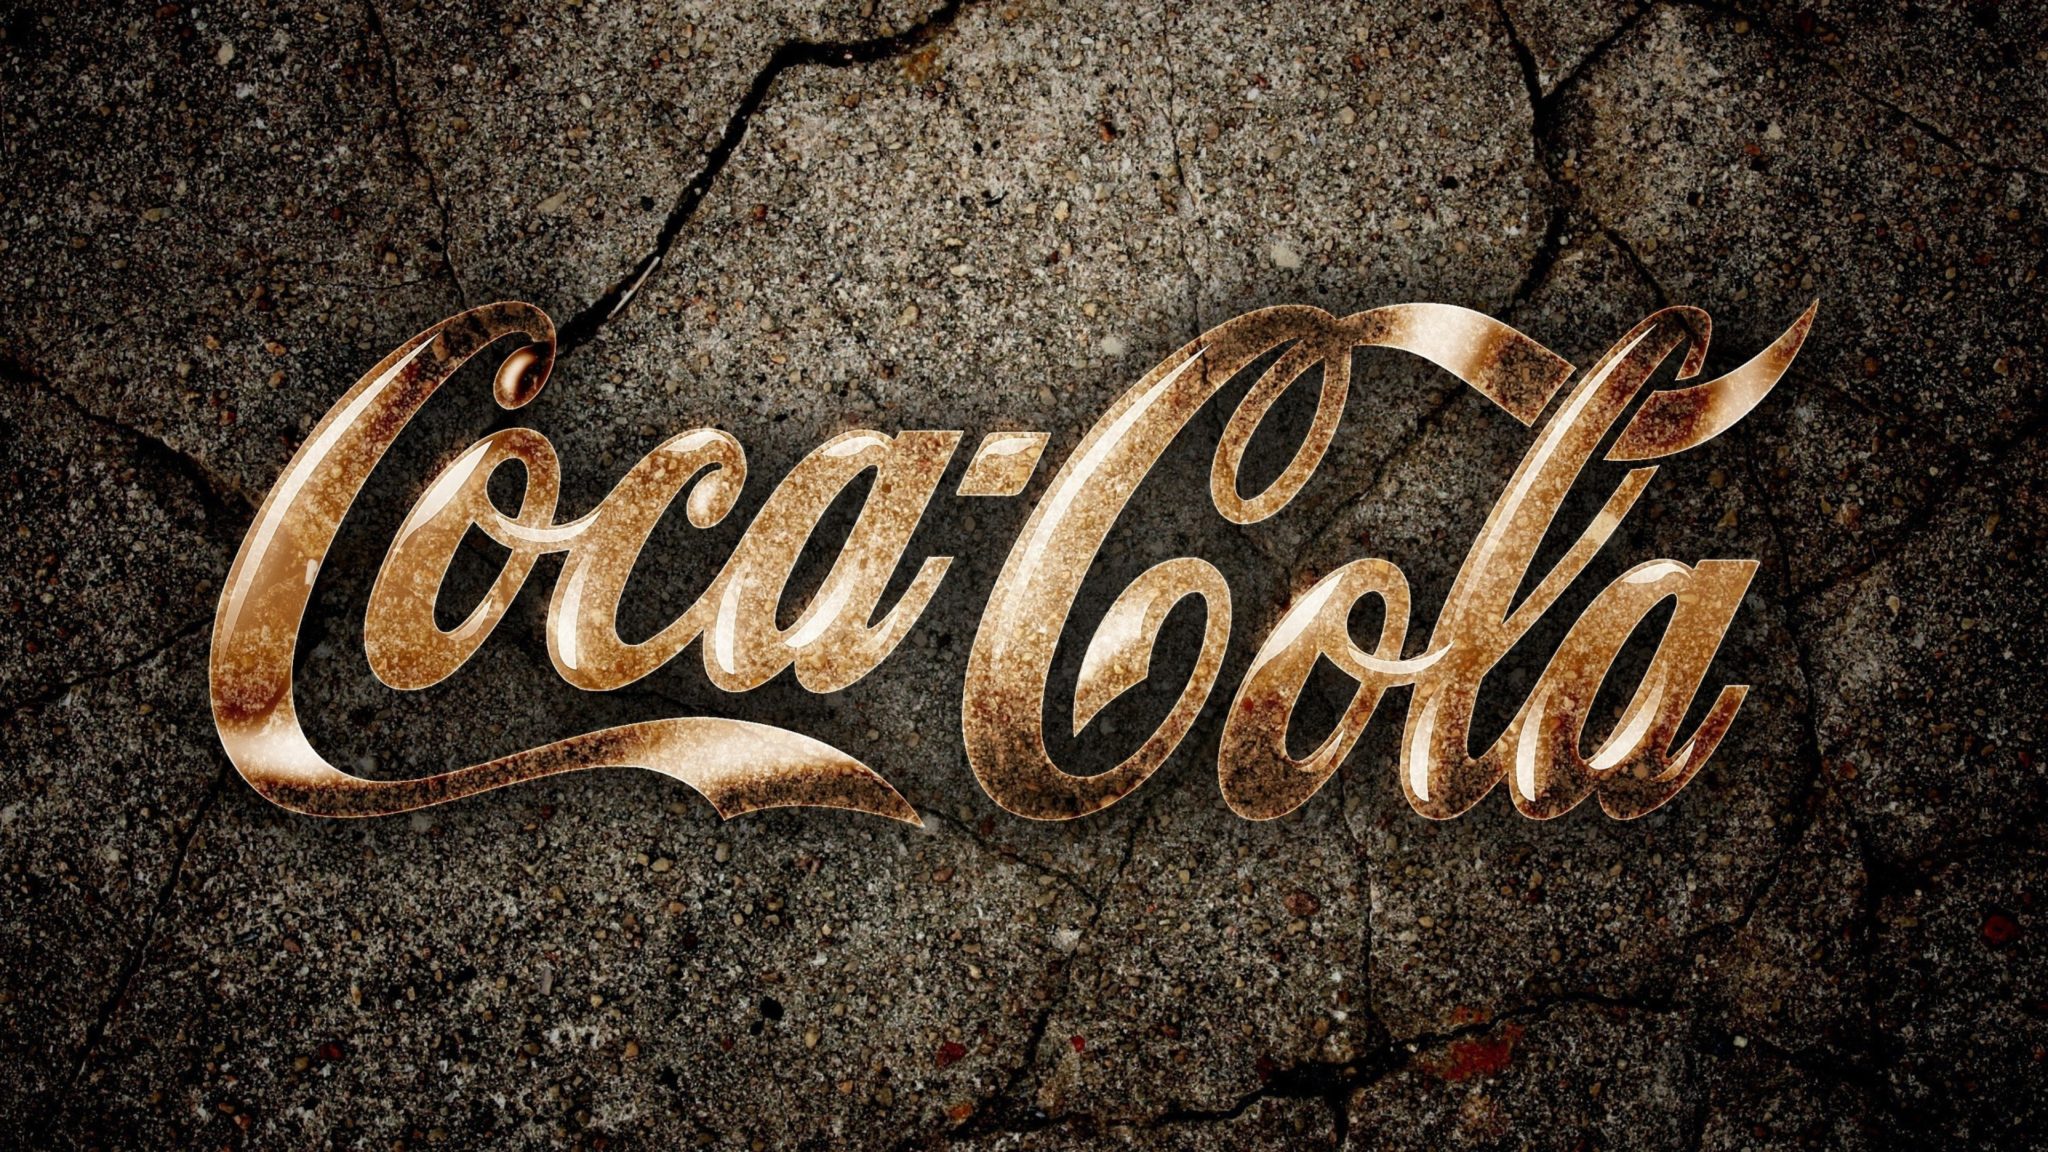 Coca Coca Gucci Mane